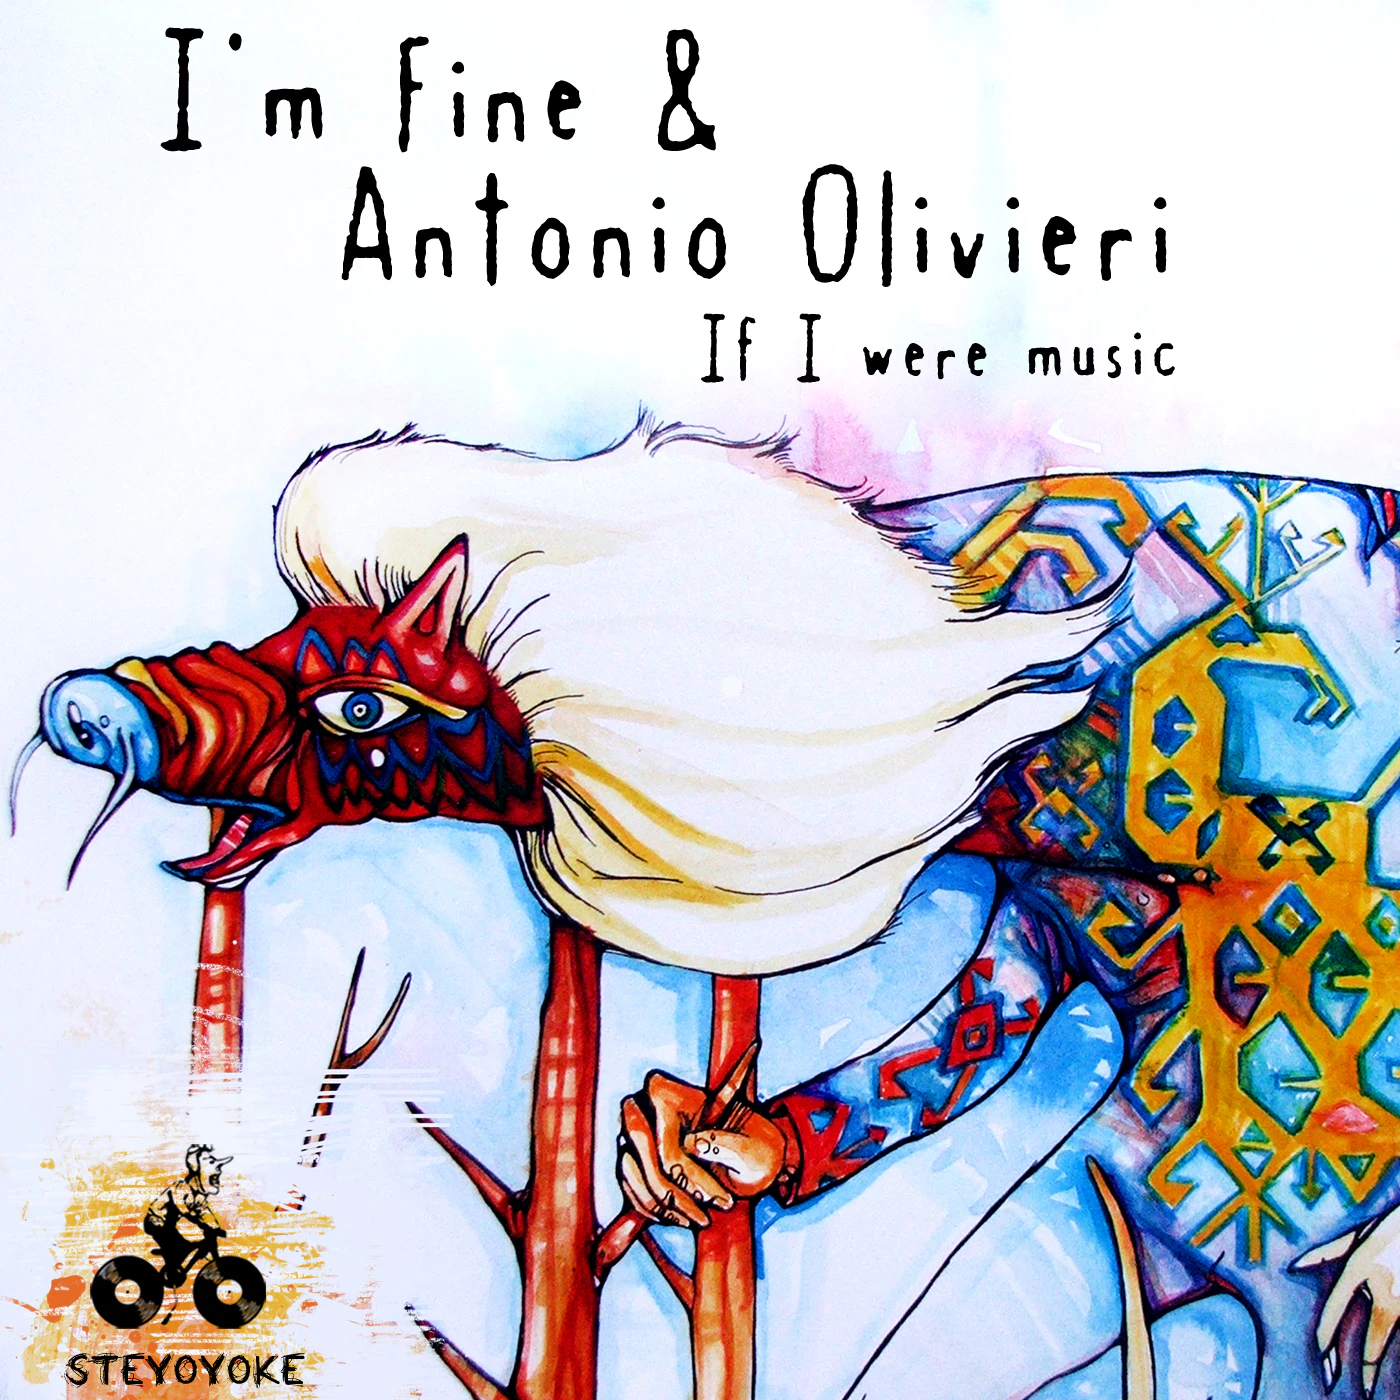 I'm fine & Antonio Olivieri- If i were music Album Artwork Design